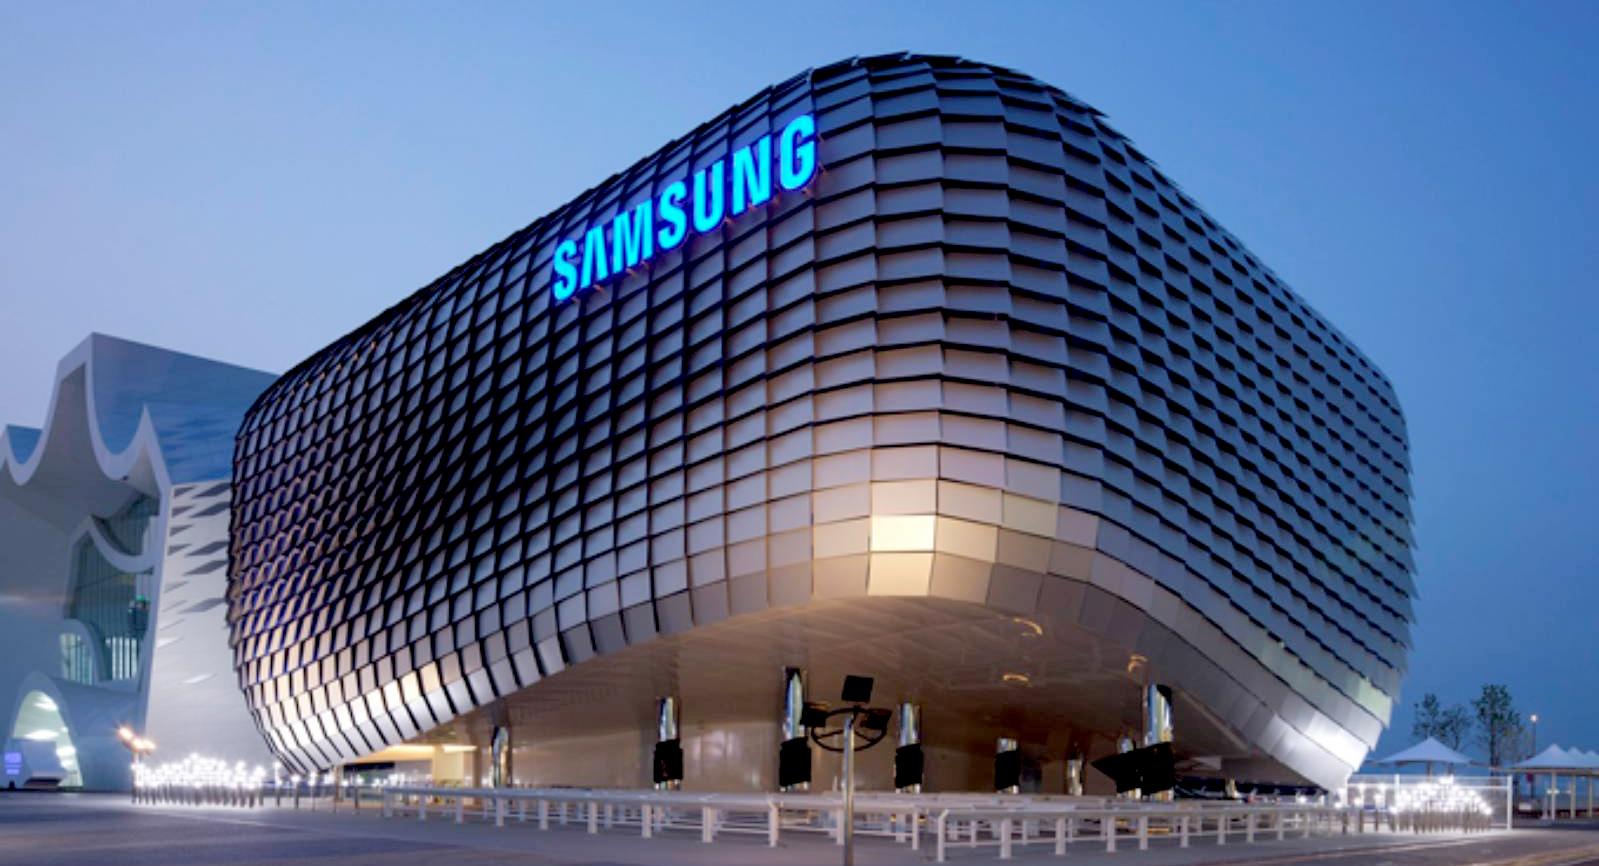 Der Betriebsgewinn von Samsung brach um 95 % auf nur noch 455 Mio. USD ein - so viel wie seit der Krise 2009 nicht mehr.